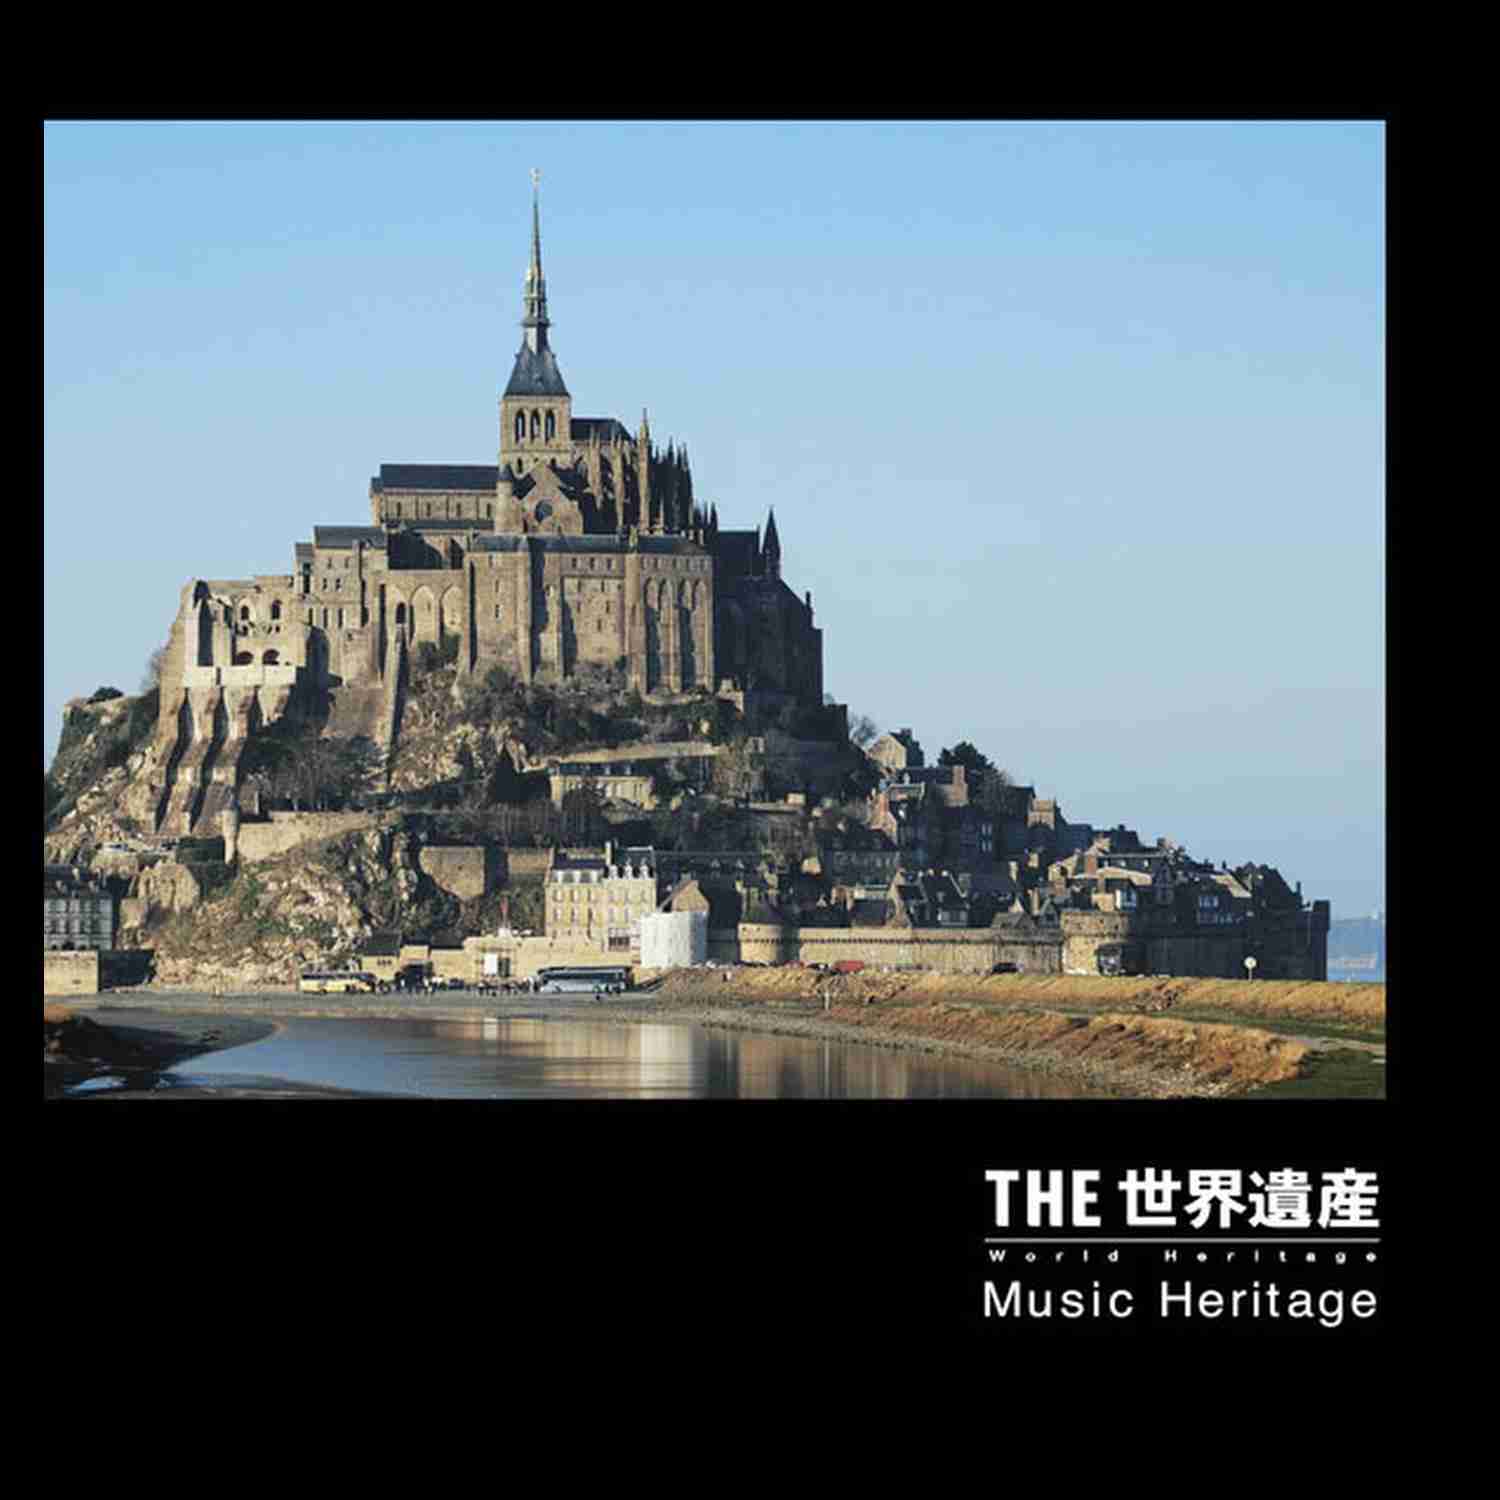 [鳥山雄司, 小松亮太][2010.08.04]THE 世界遺産 Music Heritage.jpg